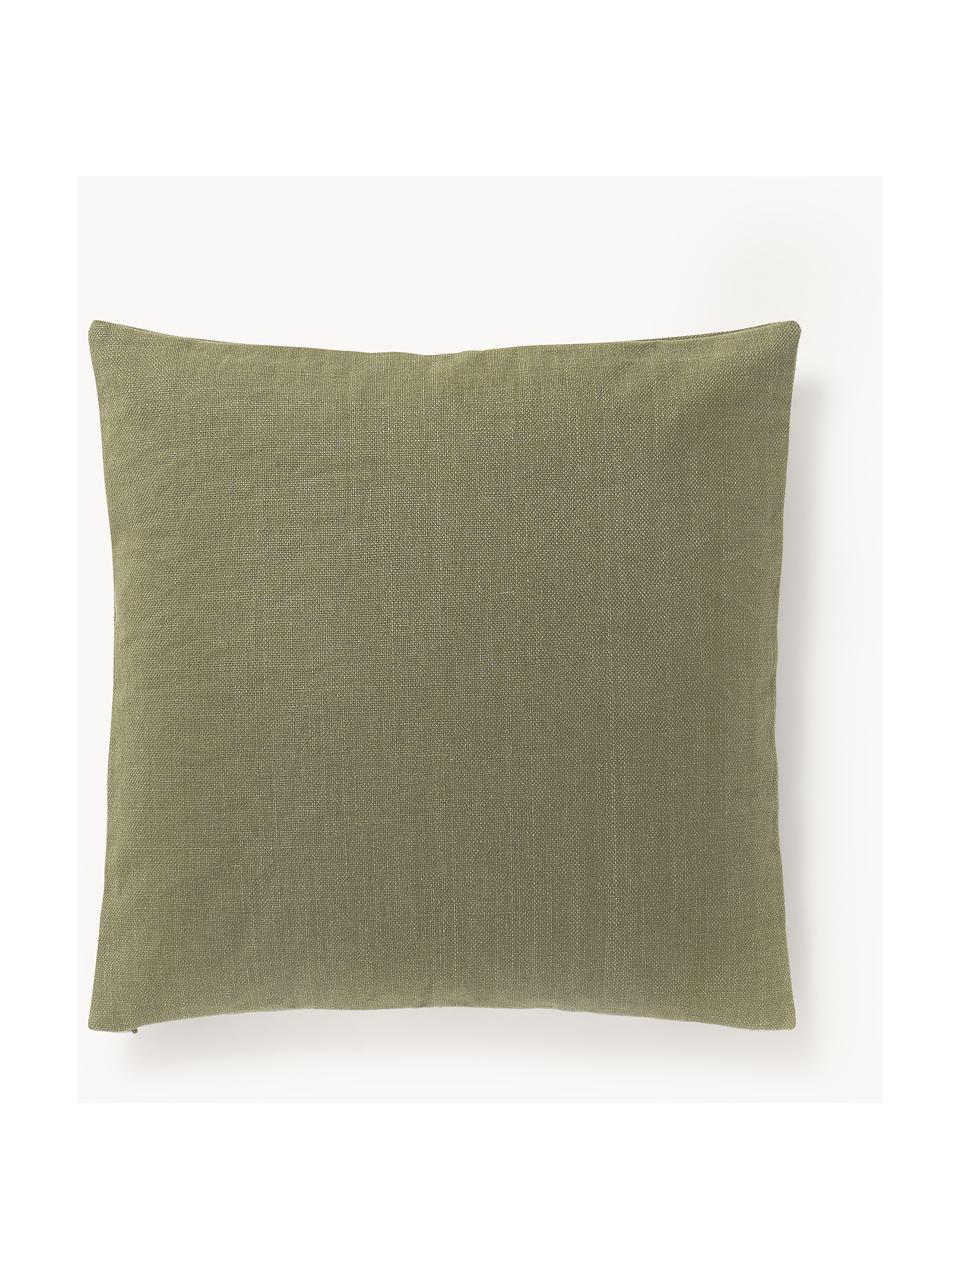 Poduszka zewnętrzna Oline, Oliwkowy zielony, jasny beżowy, S 45 x D 45 cm